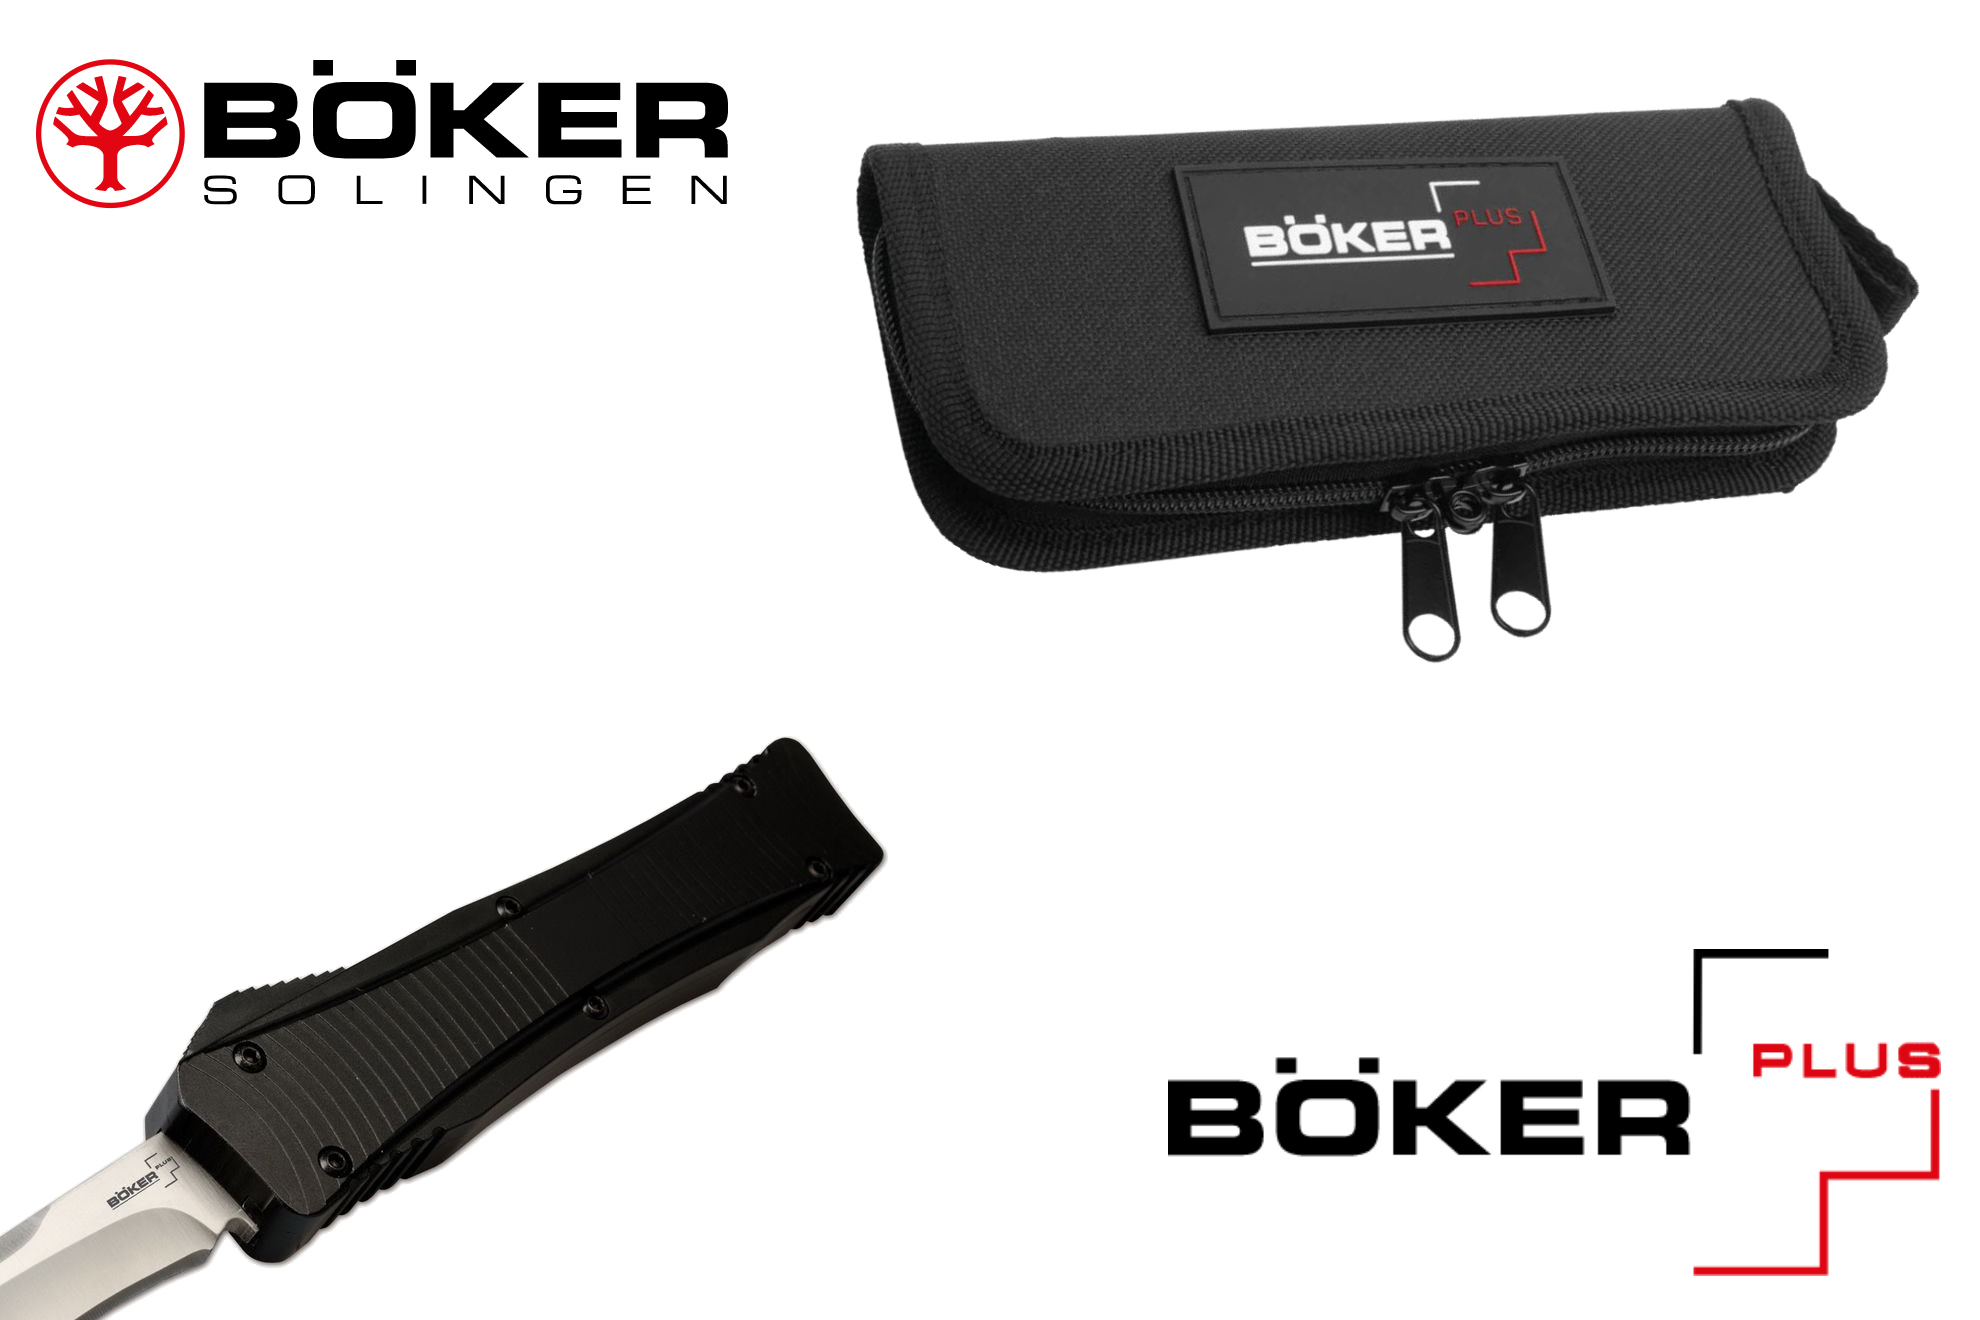 Boker Lhotak 2.0 — Автоматические ножи (OTF или фронталки), модели Falcon 06EX245 и Eagle 06EX243